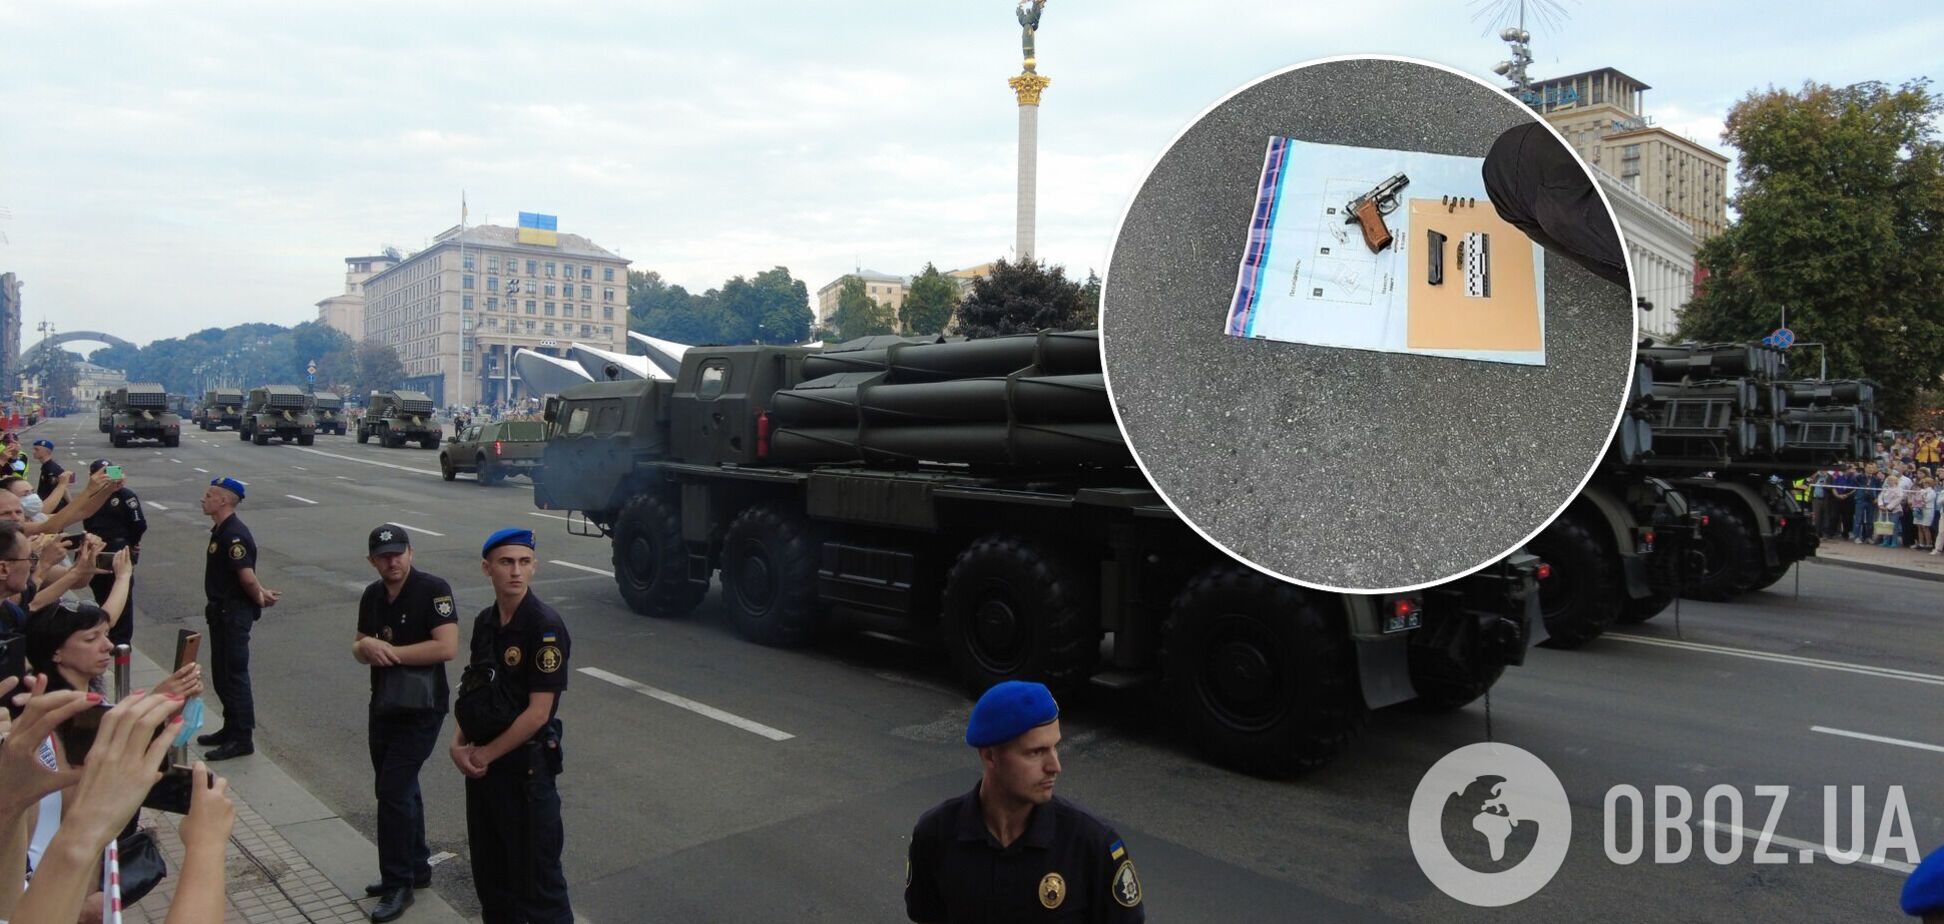 У Києві під час репетиції параду затримали озброєного чоловіка. Фото